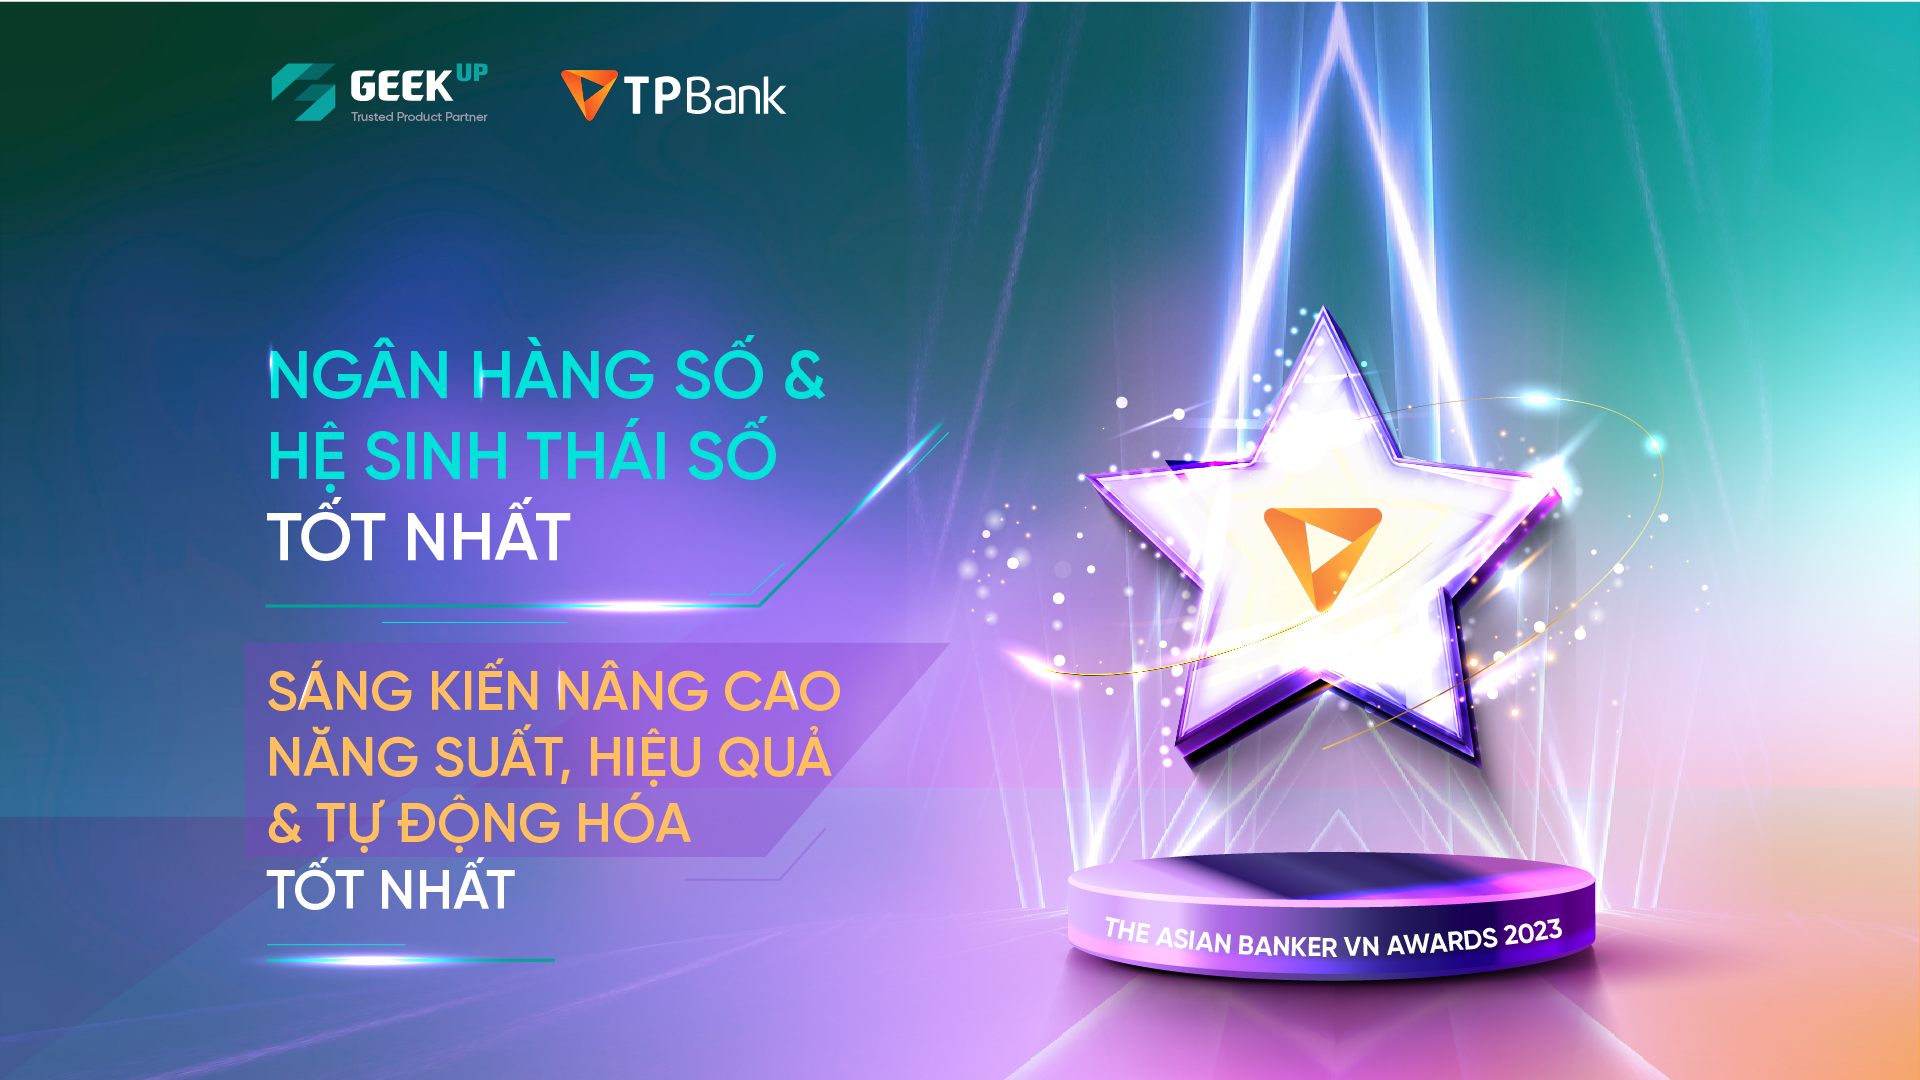 TPBank giành 2 giải thưởng lớn của The Asian Banker